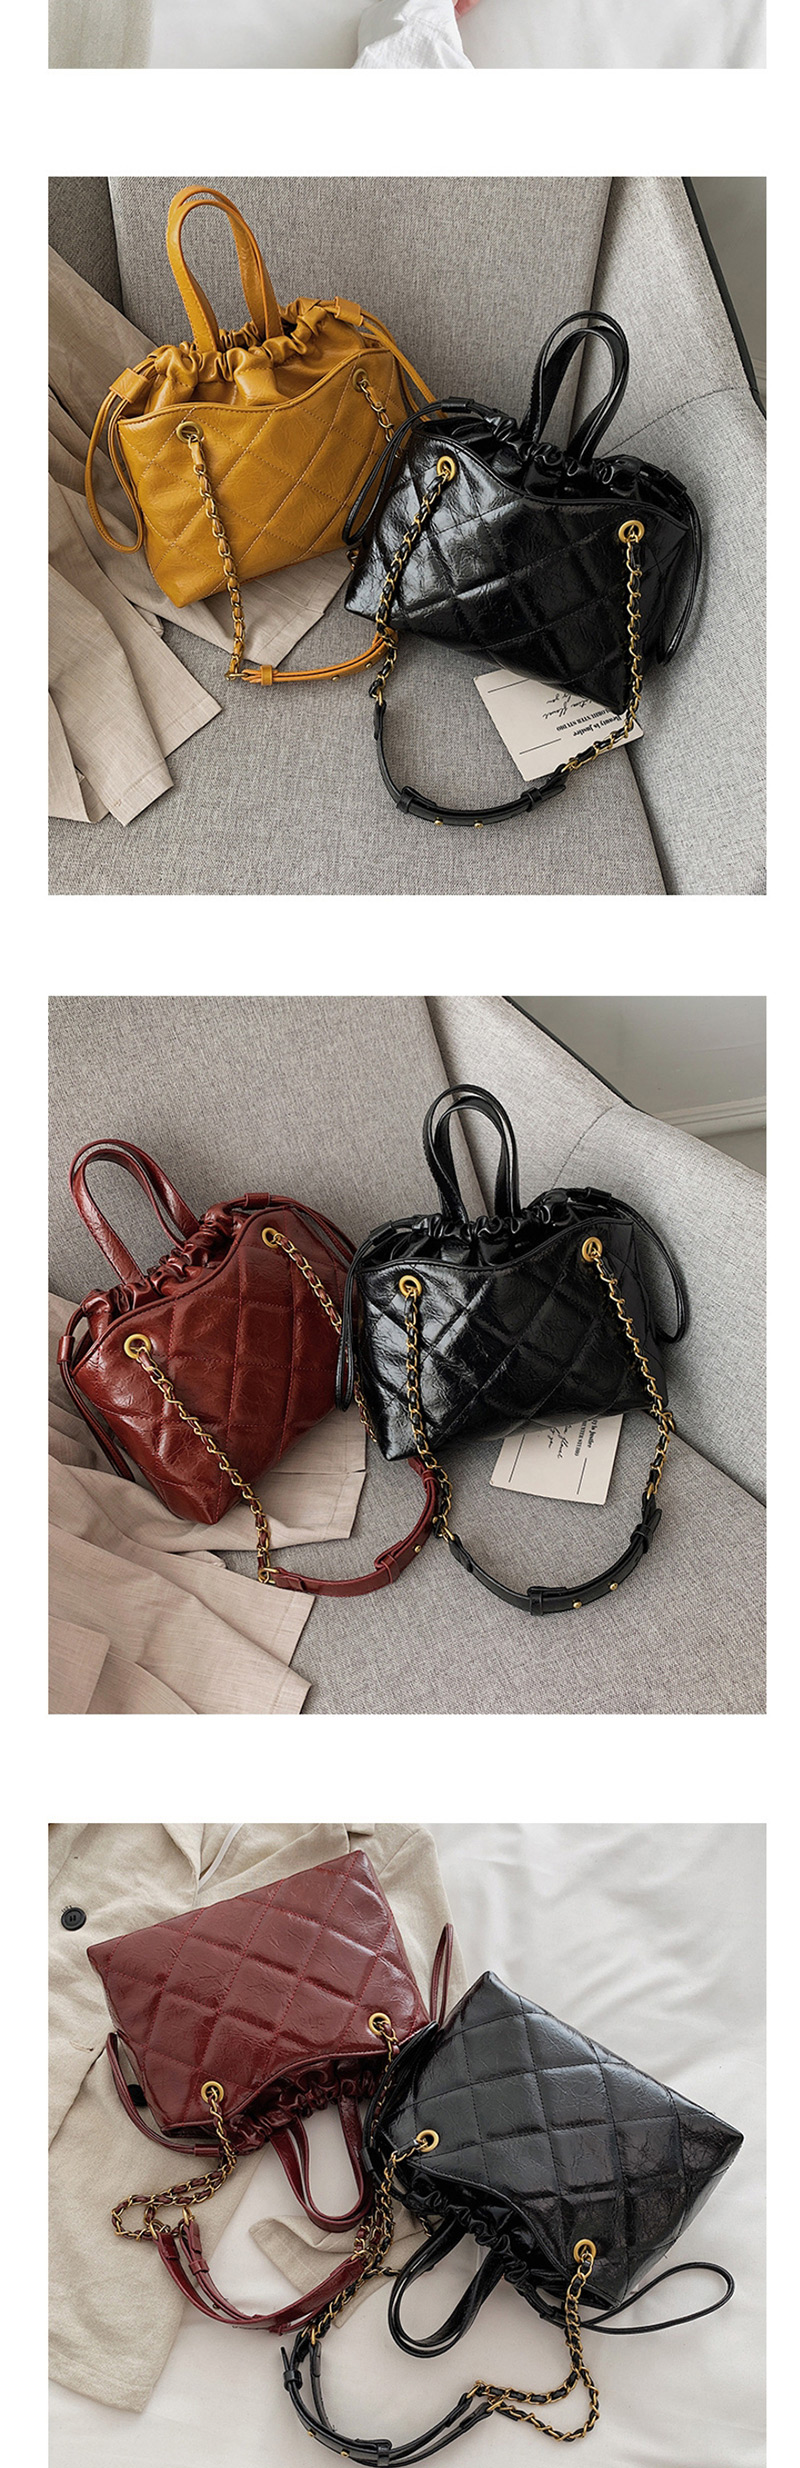 Fashion Red Wine Chain Rhombic Shoulder Messenger Handbag,Handbags